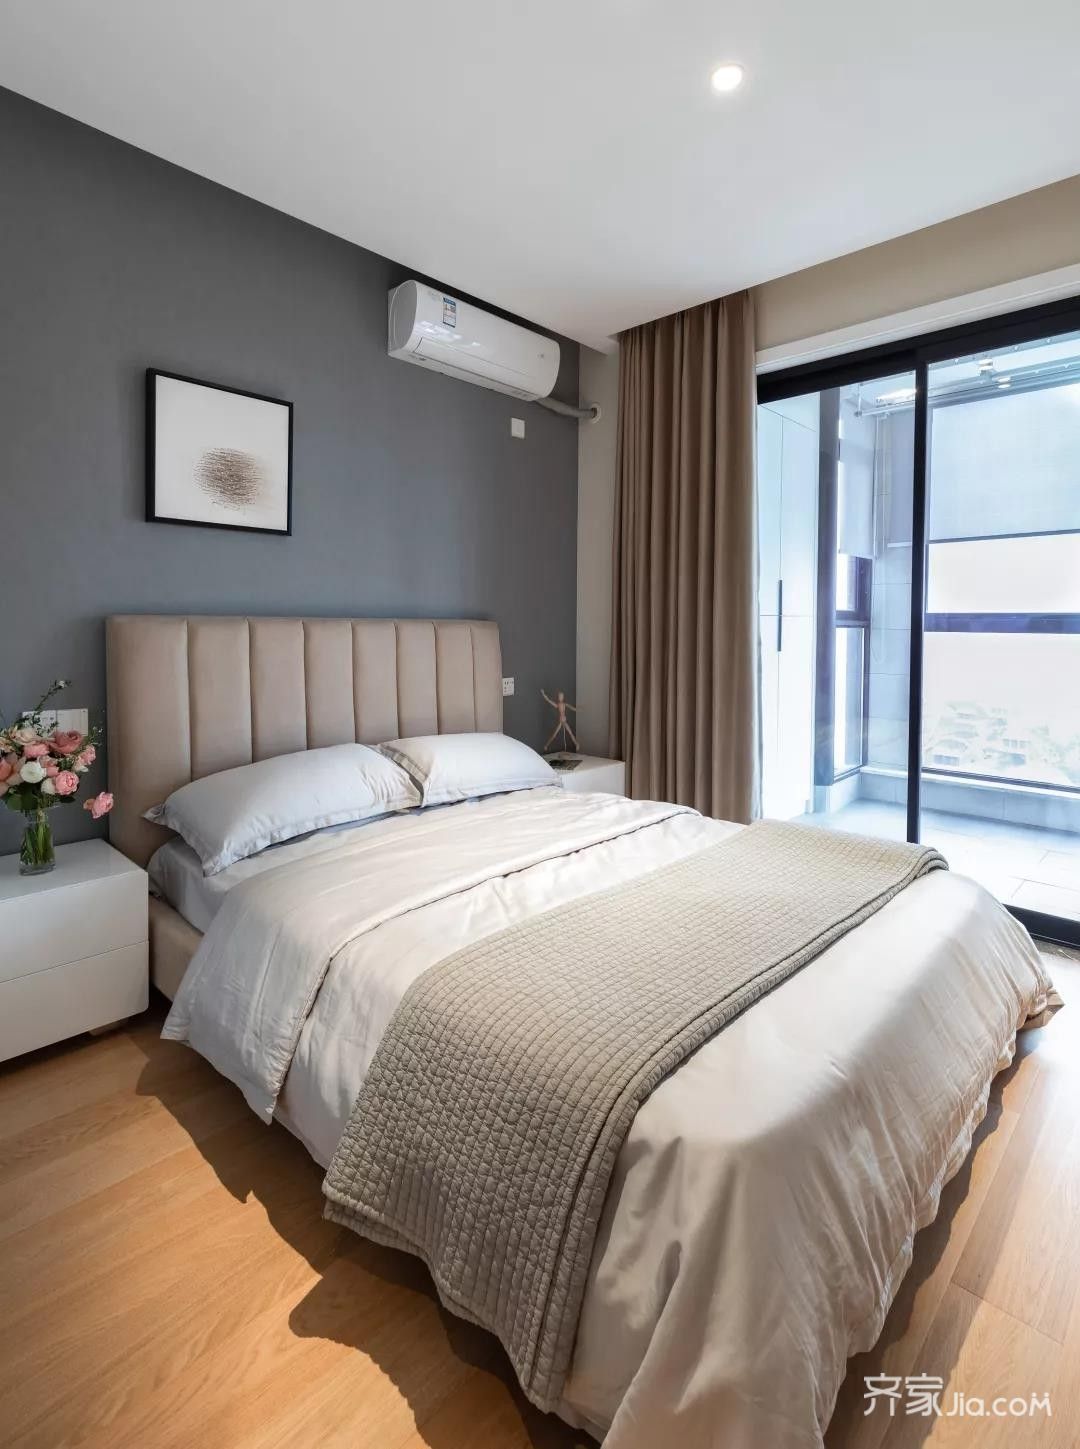 卧室墙面刷上浪漫柔美的香芋色,窗帘也选择了贴合卧室色调的拼色风格